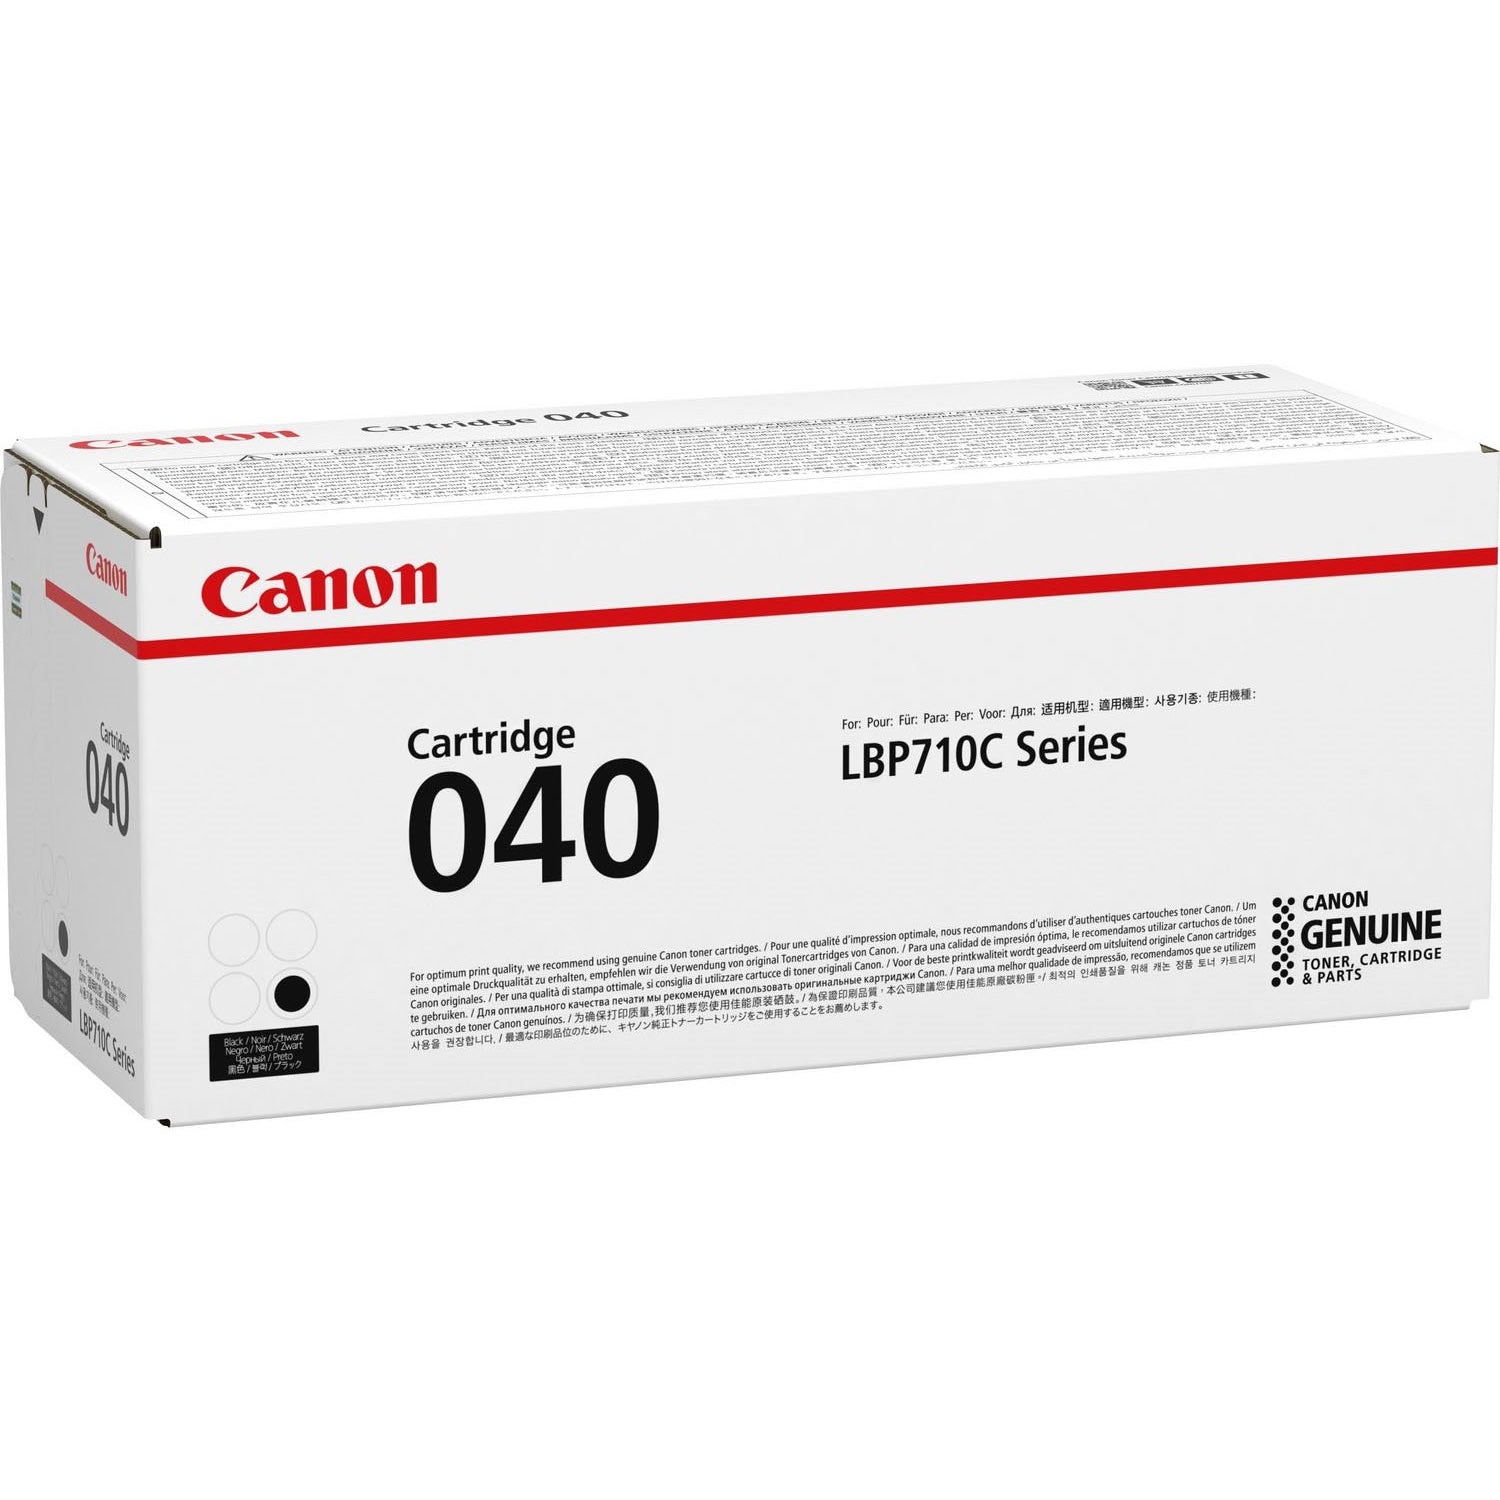 Absolute Toner Canon Genuine OEM 0460C001 040 Black Cartridge Original Canon Cartridges